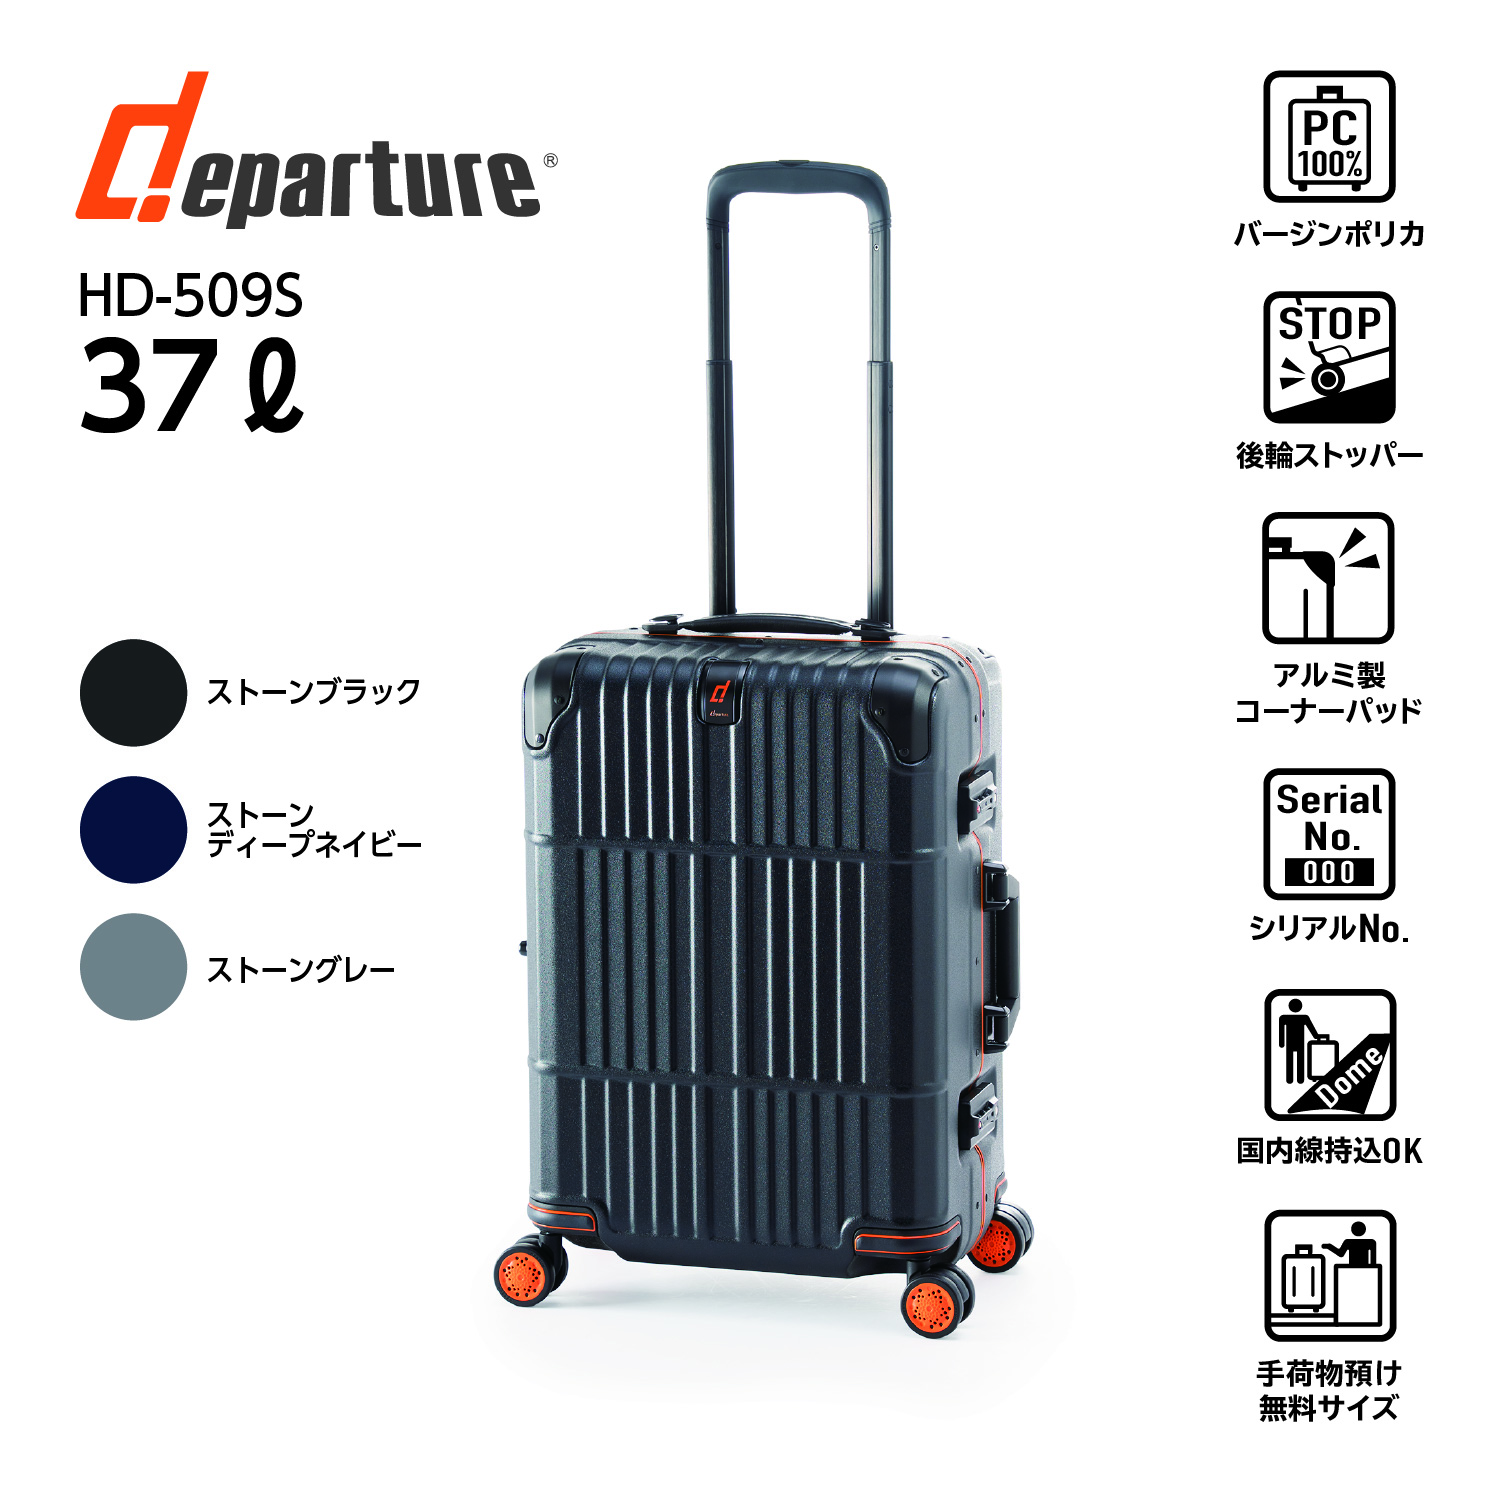 容量 | アジア・ラゲージ 公式サイト | Asia Luggage Inc.